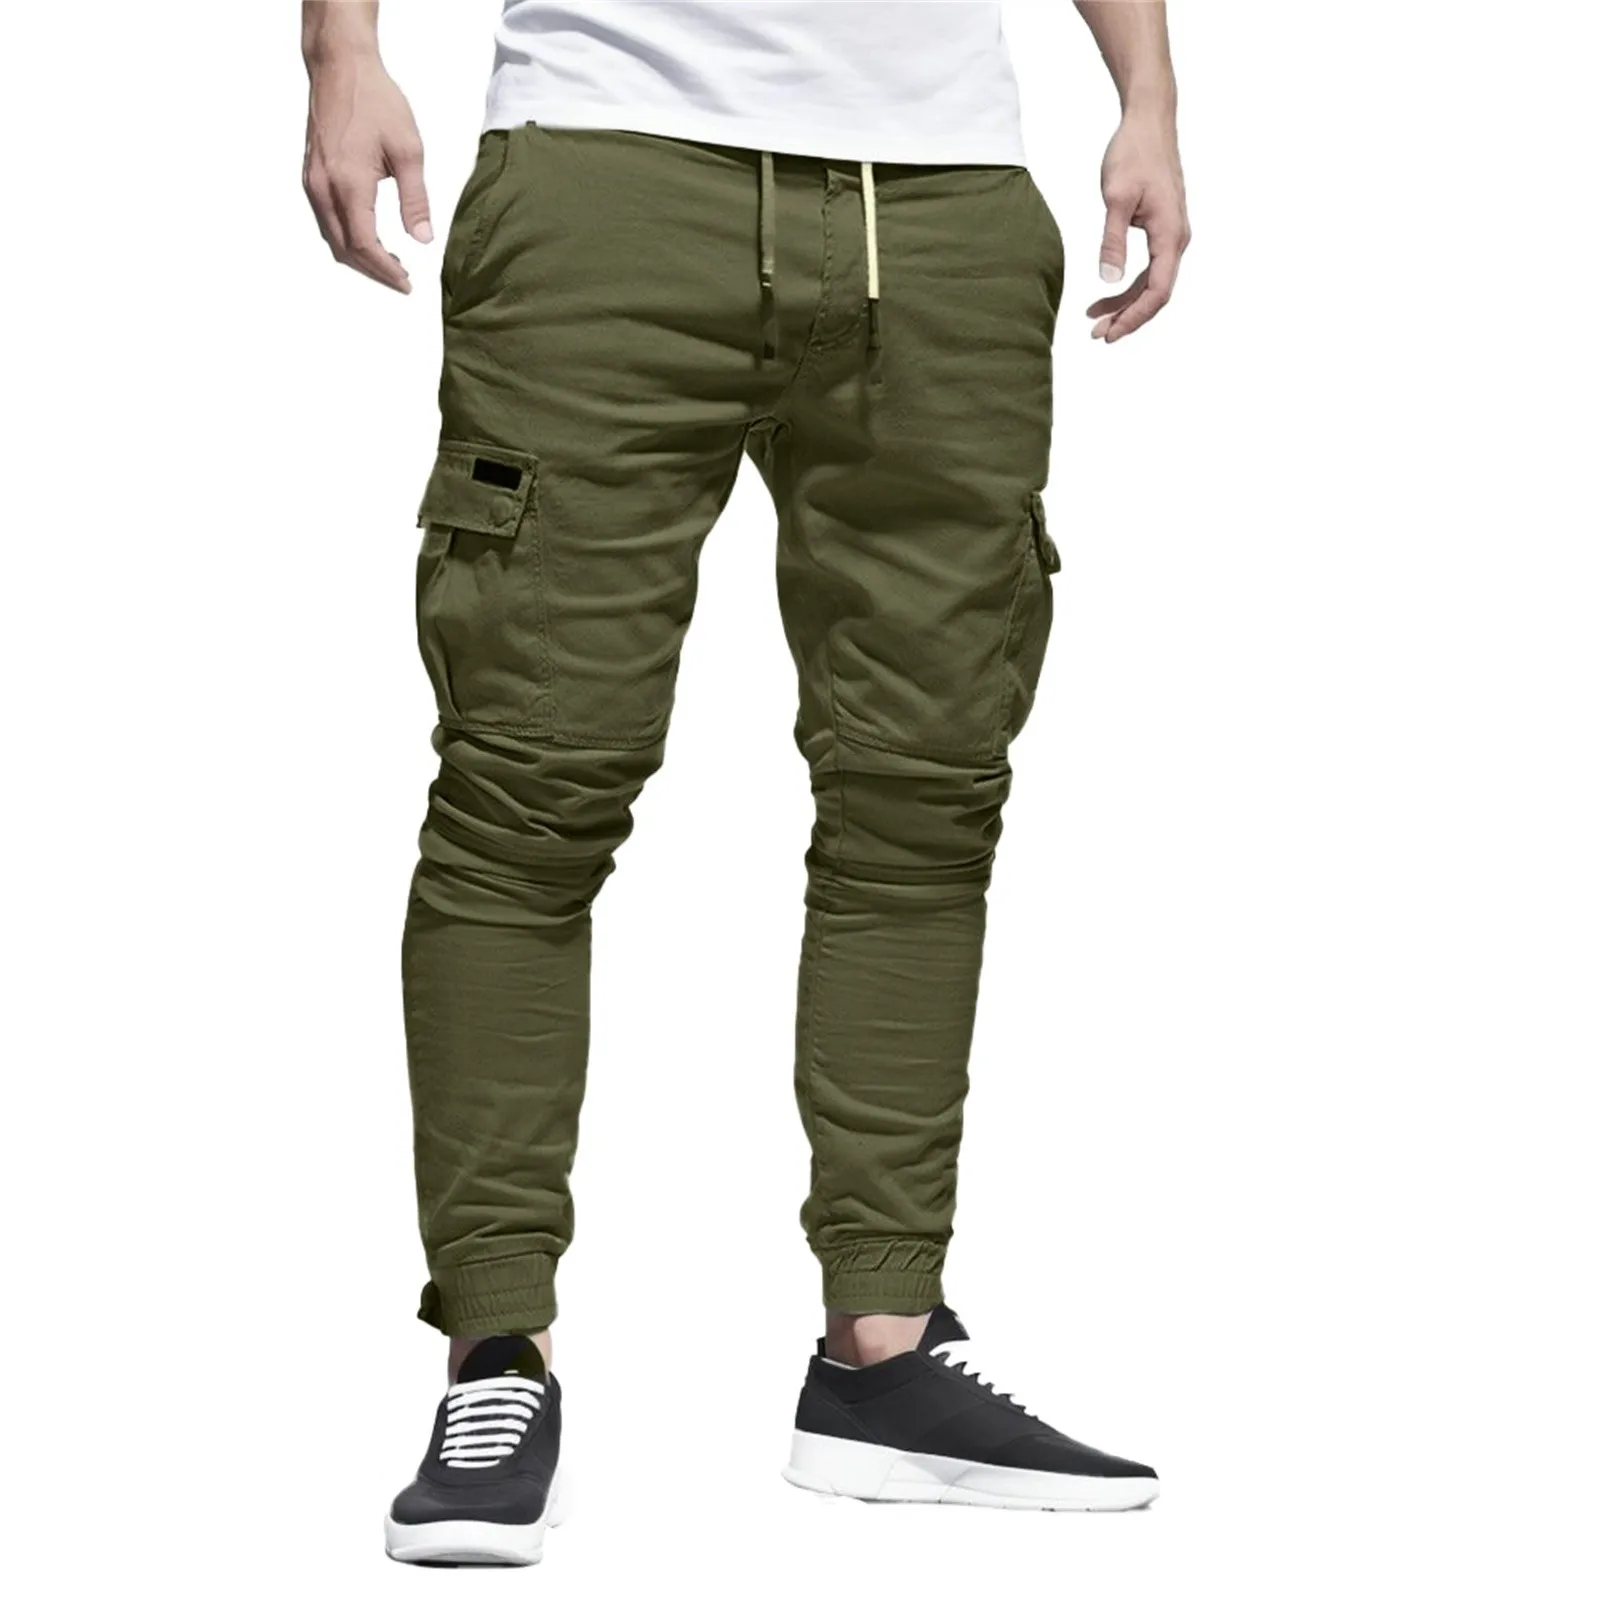 Spodnie męskie na co dzień moda duża kieszeń hiphopowe spodnie haremowe jakość znosić spodnie dresowe miękkie męskie biegaczy męskie spodnie pantalones